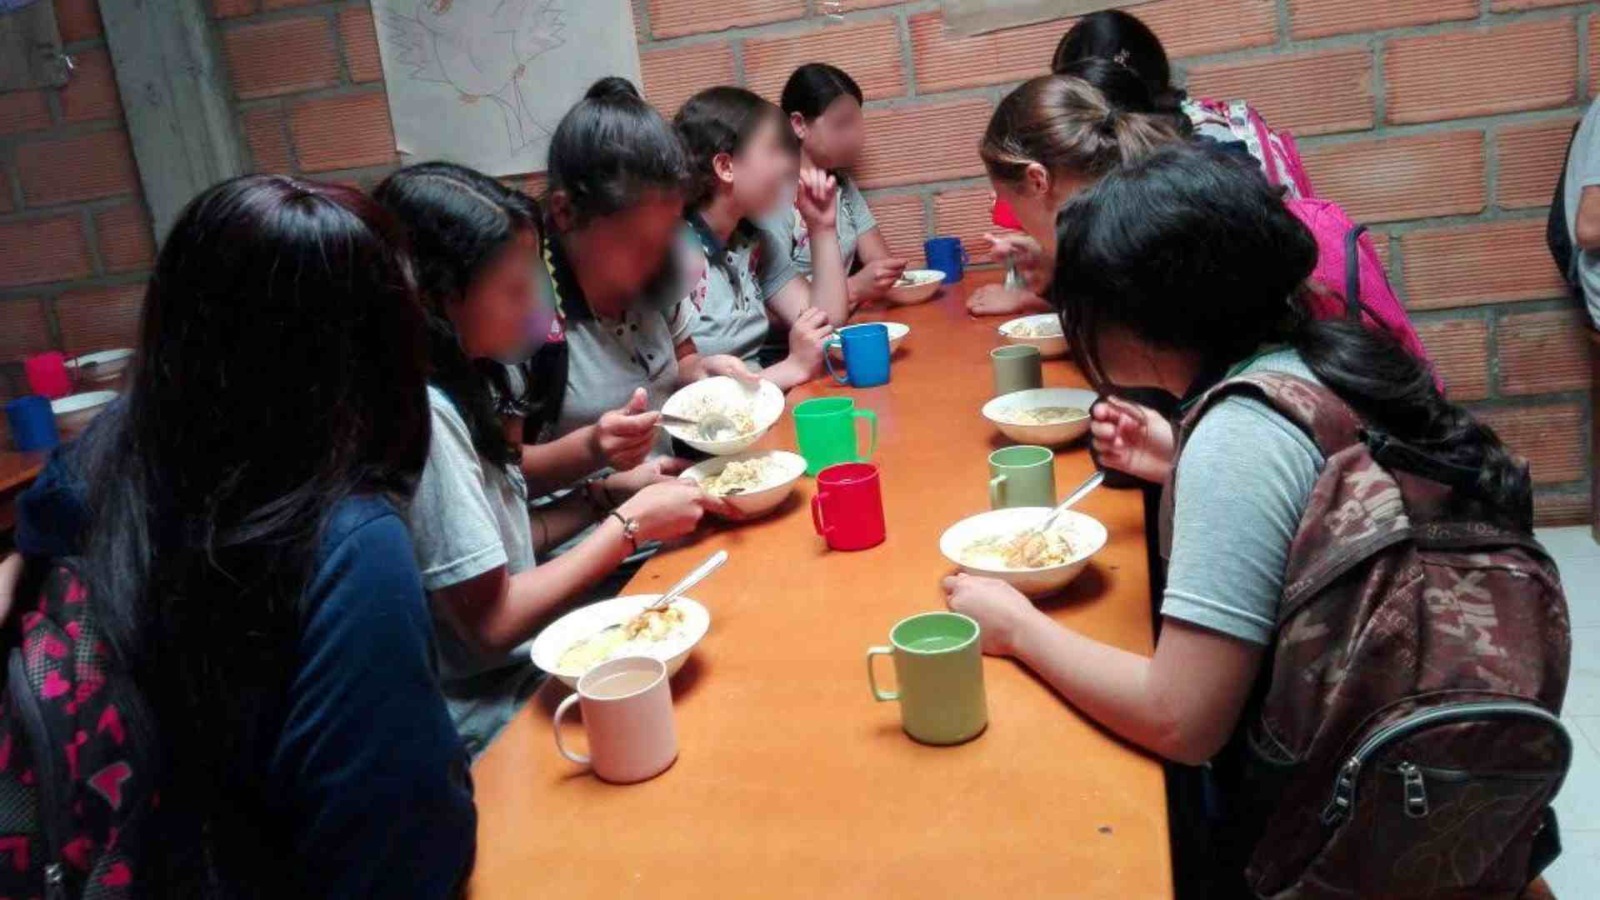 La comunidad estudiantil advierte que no están recibiendo de manera adecuada las raciones de comida. Foto: Edgar Javier Correa.